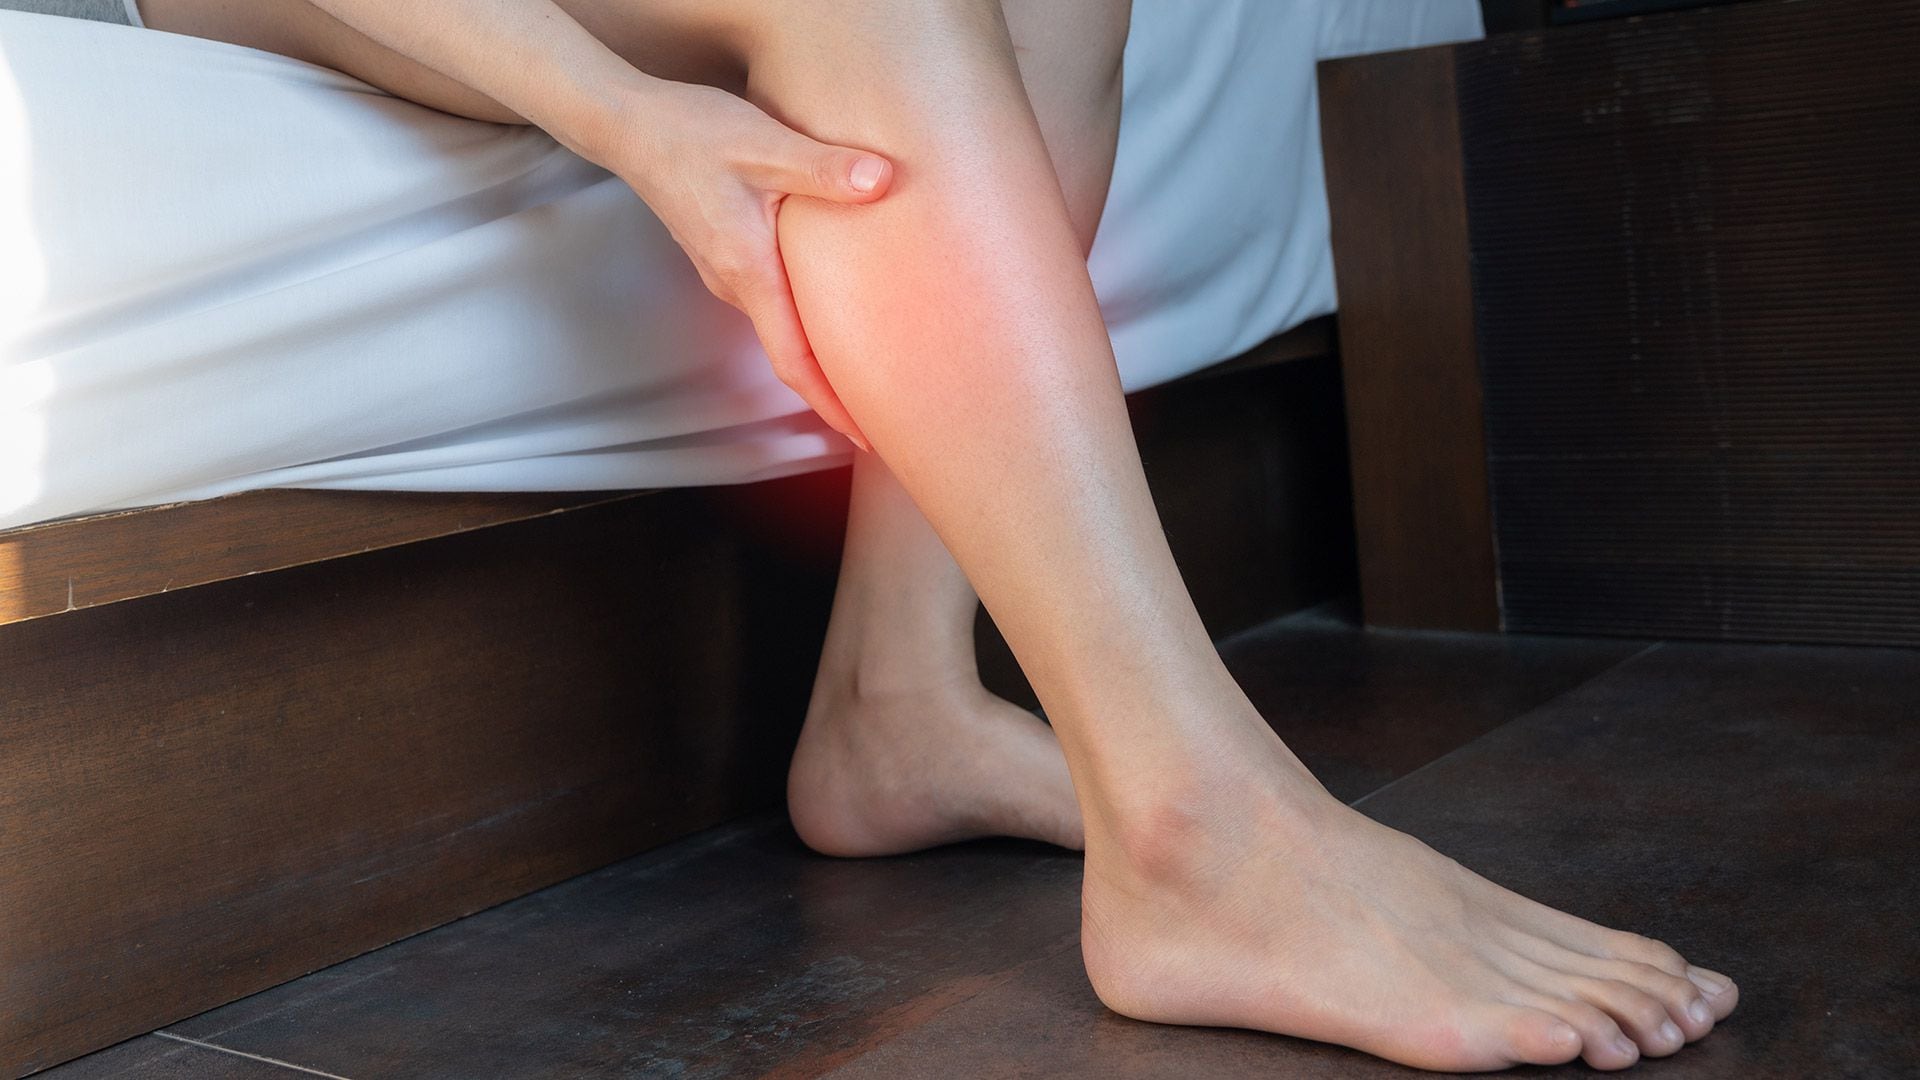 Los calambres y las molestias en las piernas se encuentran entre los síntomas frecuentes de la enfermedad venosa (Getty)